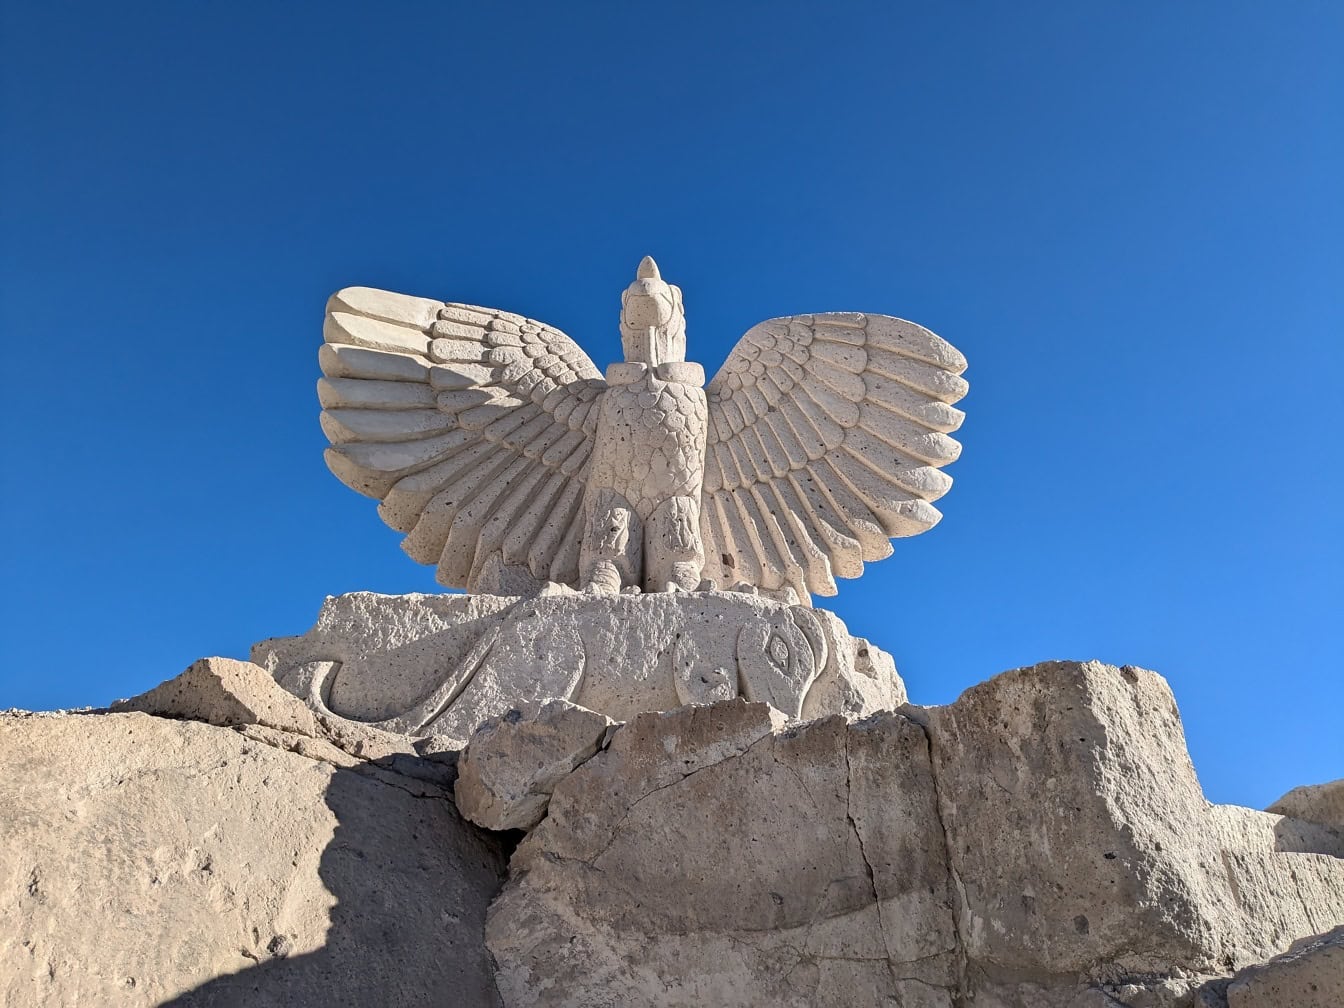 Krásná socha ptáka s široce rozevřenými křídly na cestě Sillar u kaňonu Culebrillas v Arequipě v Peru